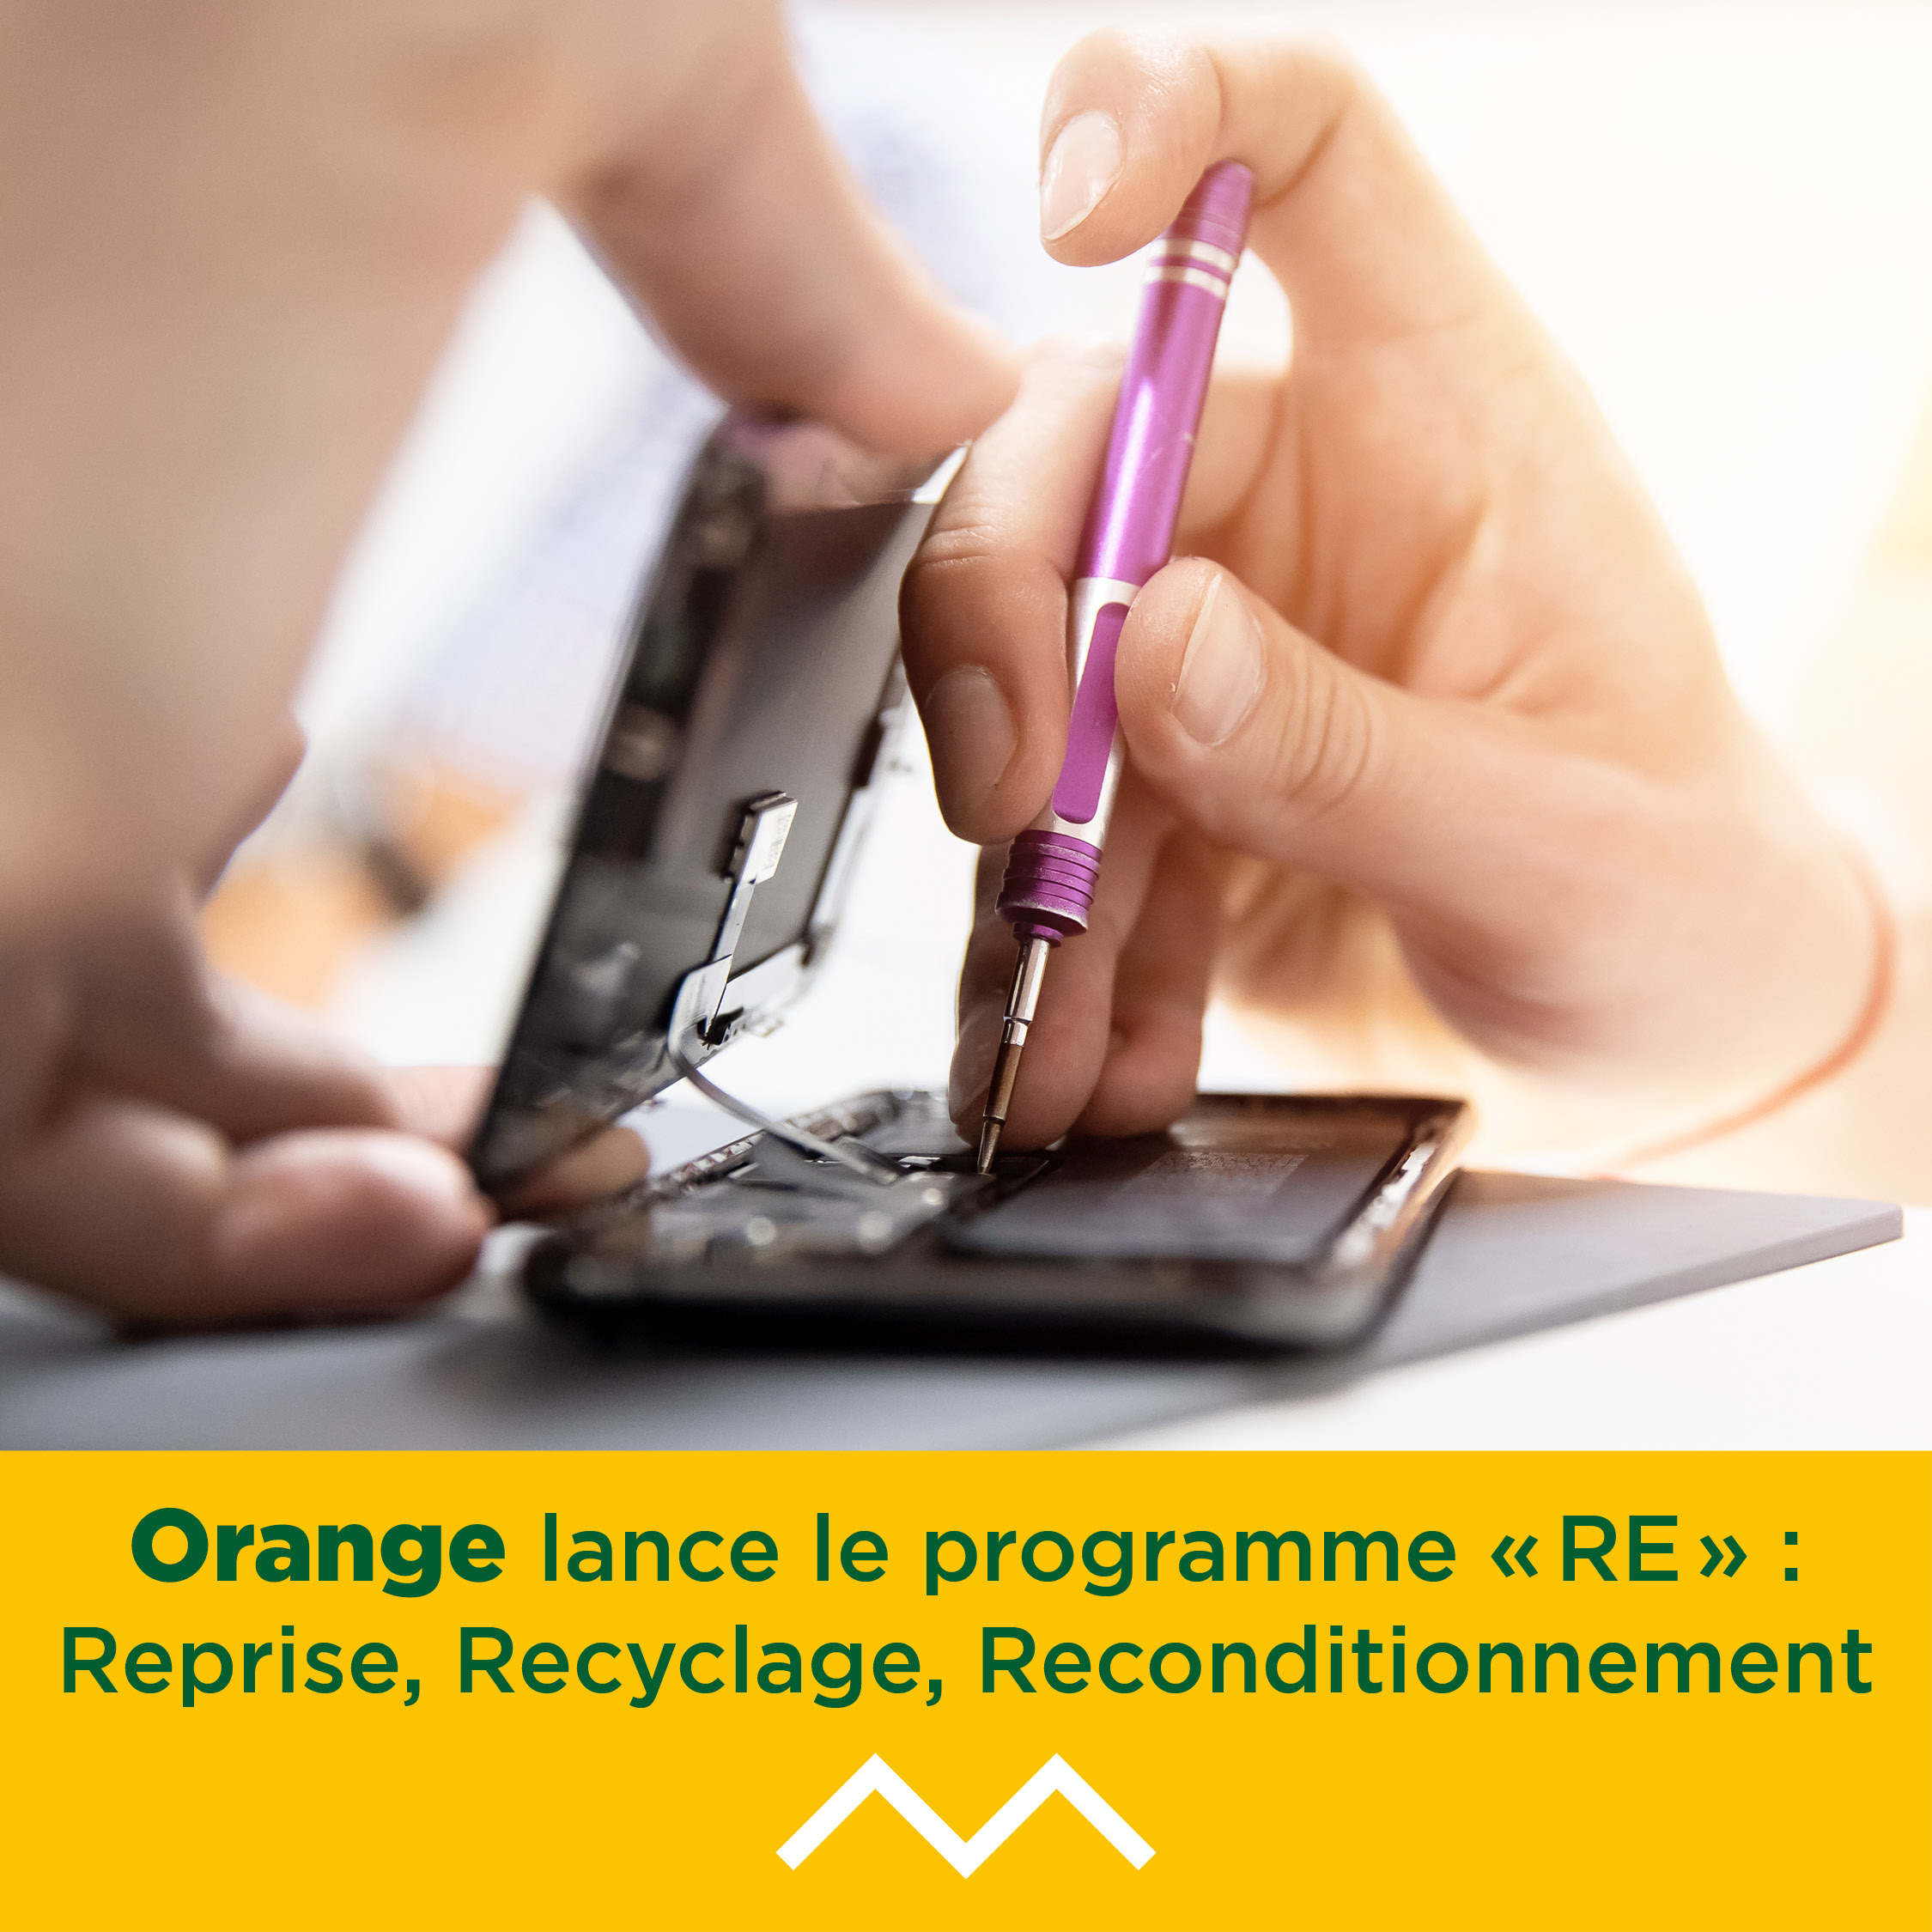 Orange lance le programme « RE » : Reprise, Recyclage, Reconditionnement